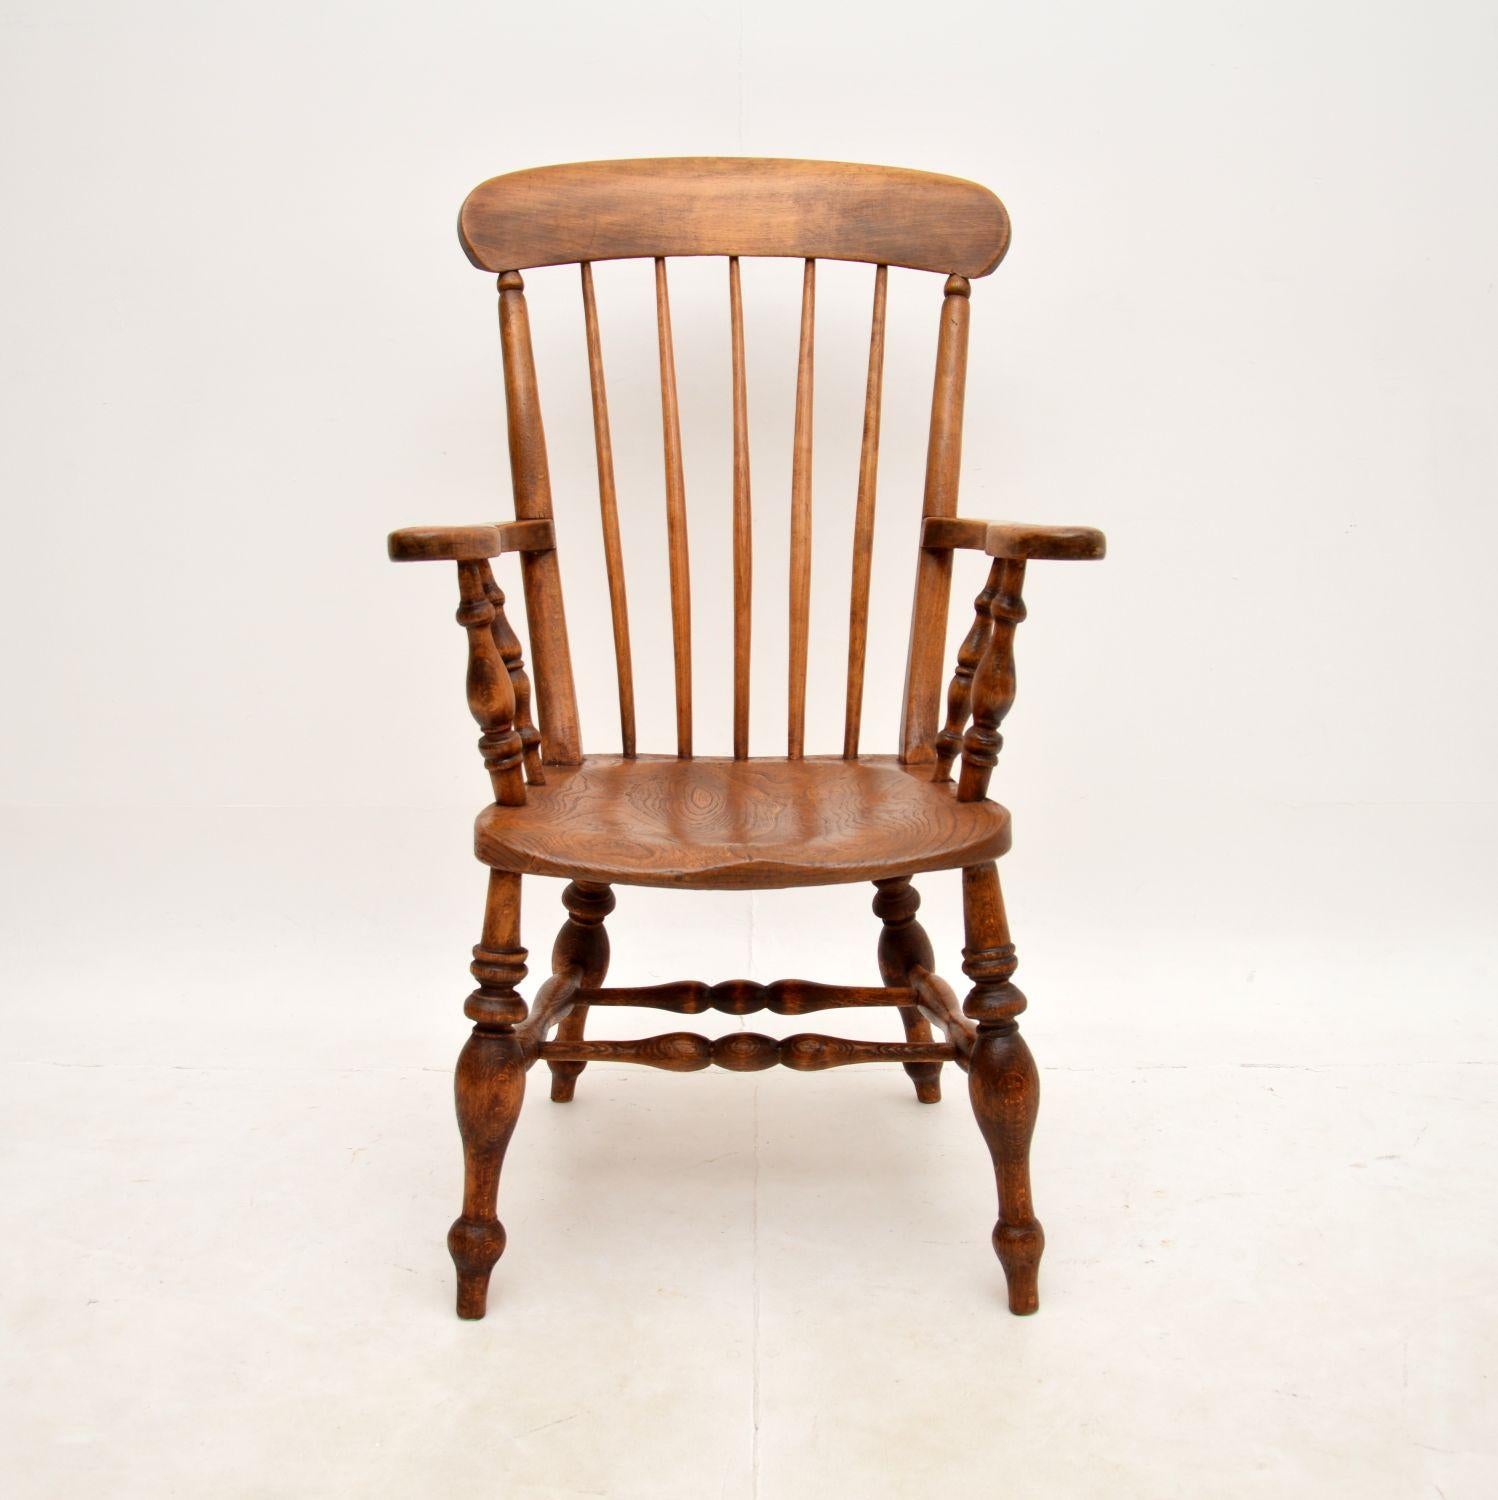 Ein wunderbarer antiker viktorianischer Windsor-Sessel. Sie wurde in England hergestellt und stammt aus der Zeit zwischen 1860 und 1880.

Die Qualität ist phantastisch, die Sitzfläche ist aus massiver Ulme gefertigt und der Rest des Rahmens scheint